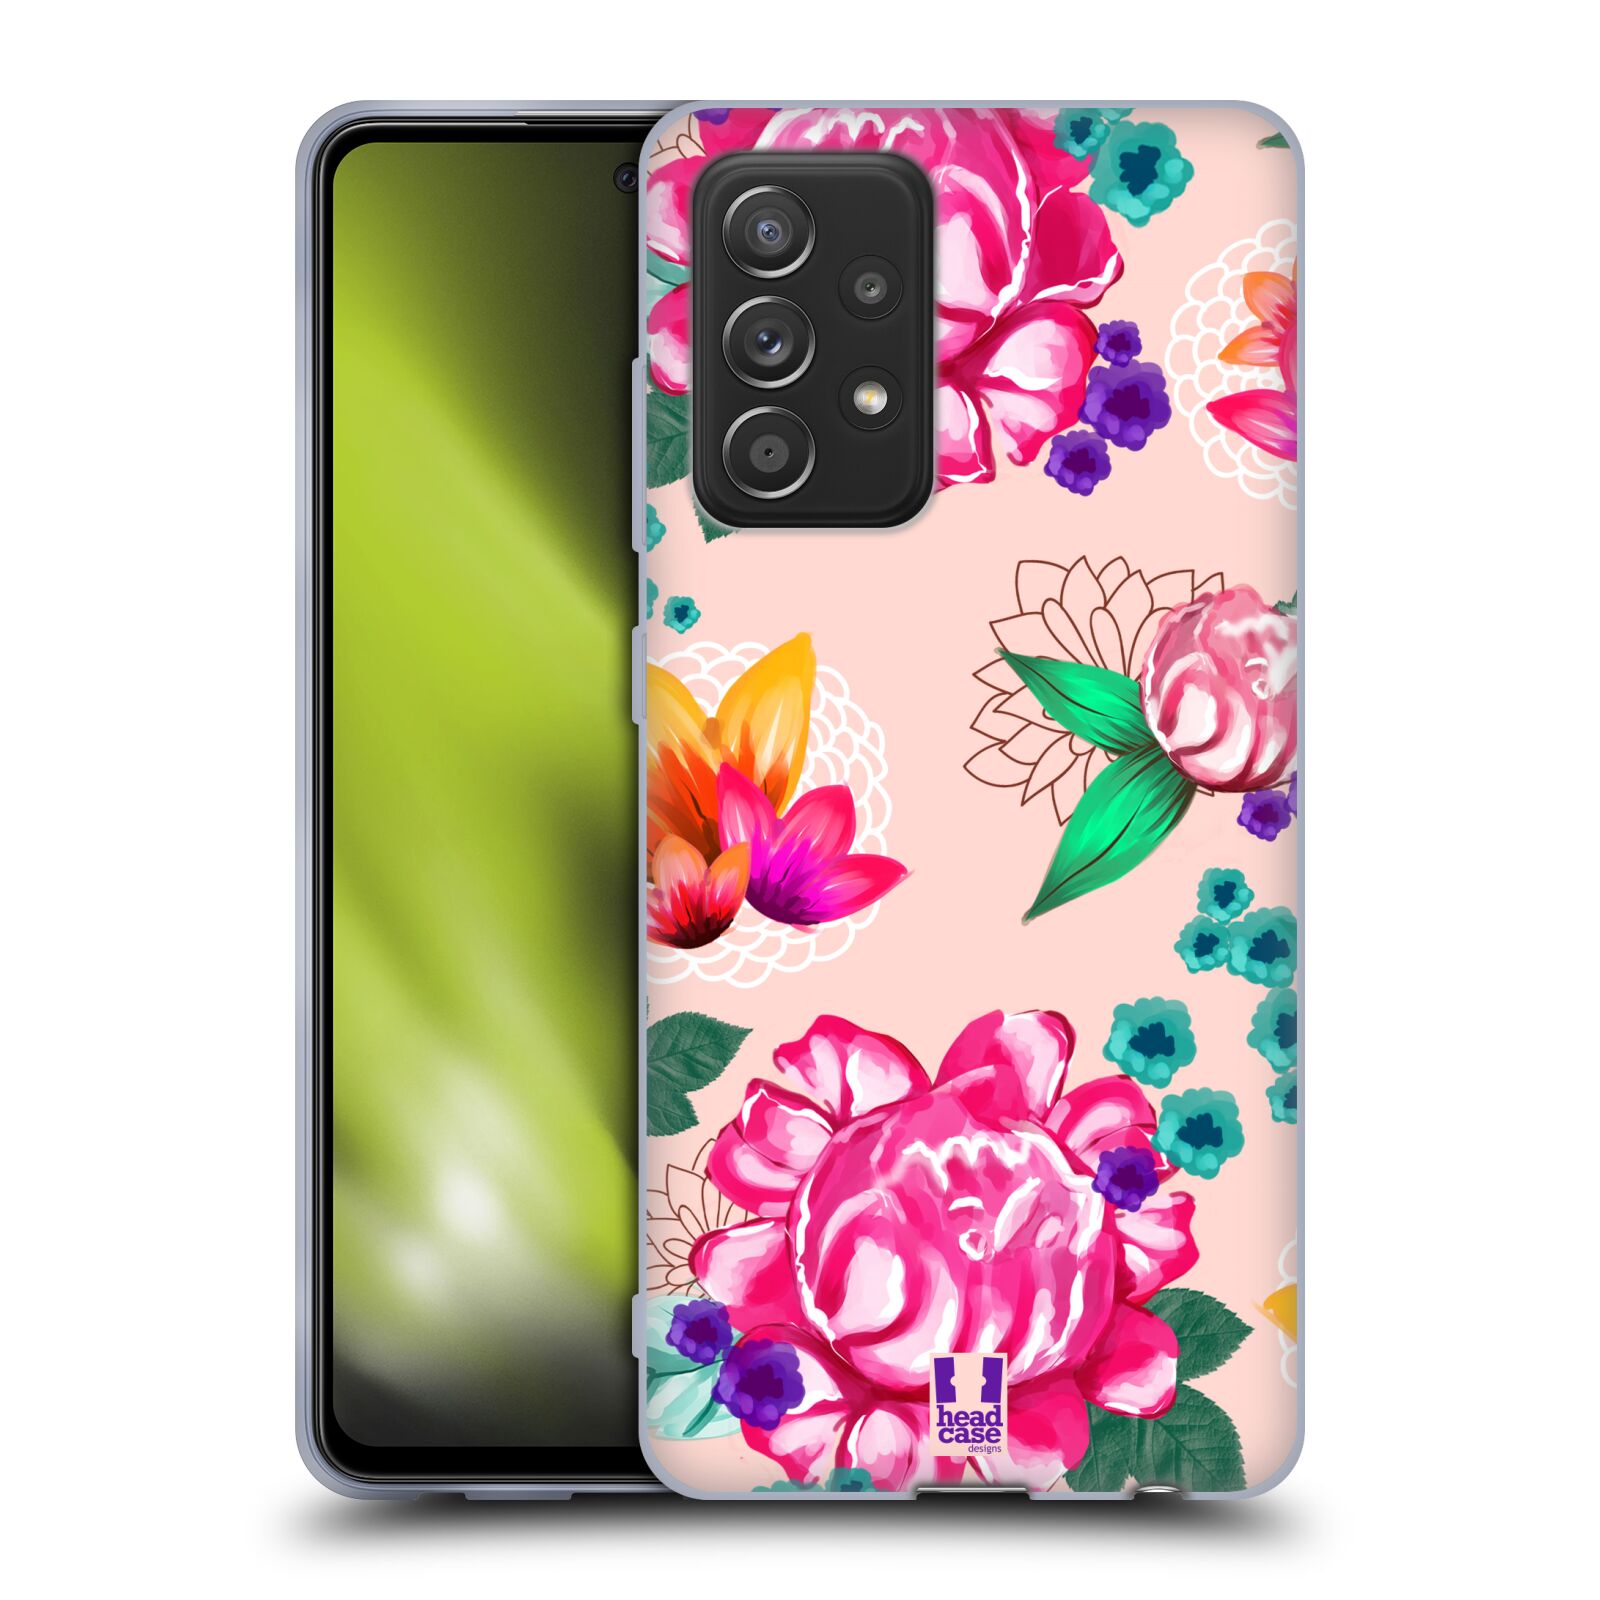 Plastový obal HEAD CASE na mobil Samsung Galaxy A52 / A52 5G / A52s 5G vzor Malované květiny barevné SVĚTLE RŮŽOVÁ